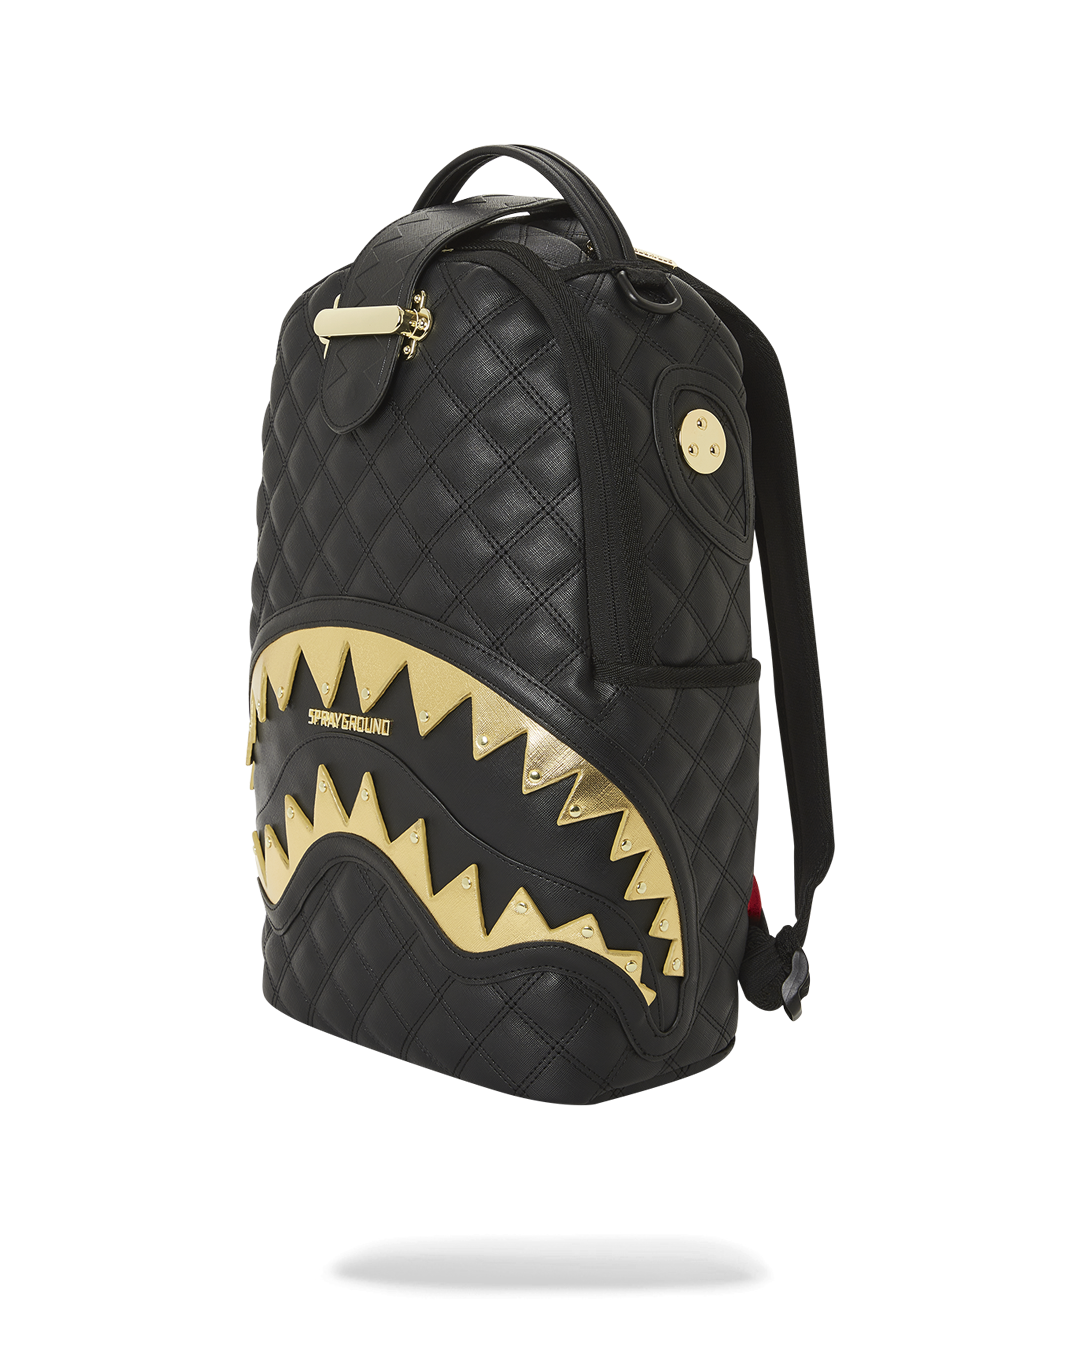 Sprayground Shark Backpack in Black for Men